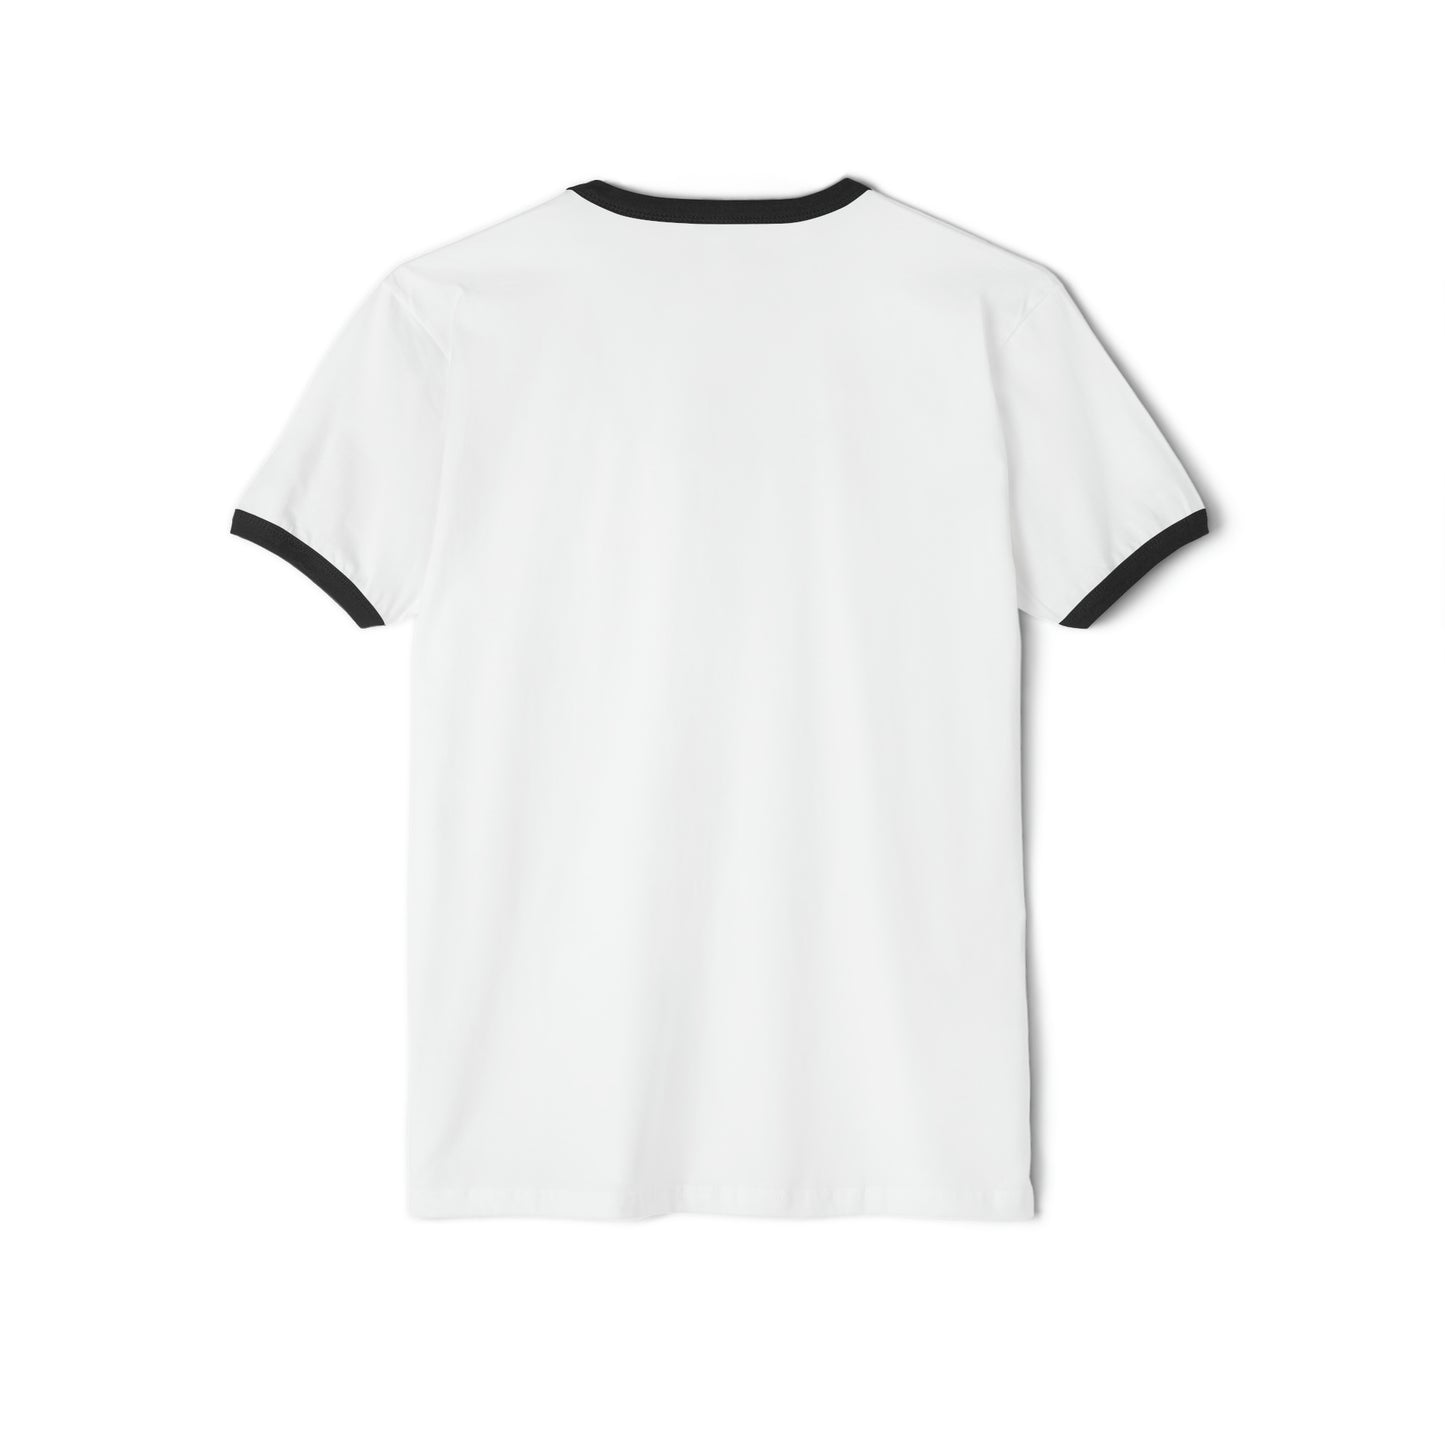 AUDACIOUS RECORDS Retro Unisex Cotton Ringer T-Shirt